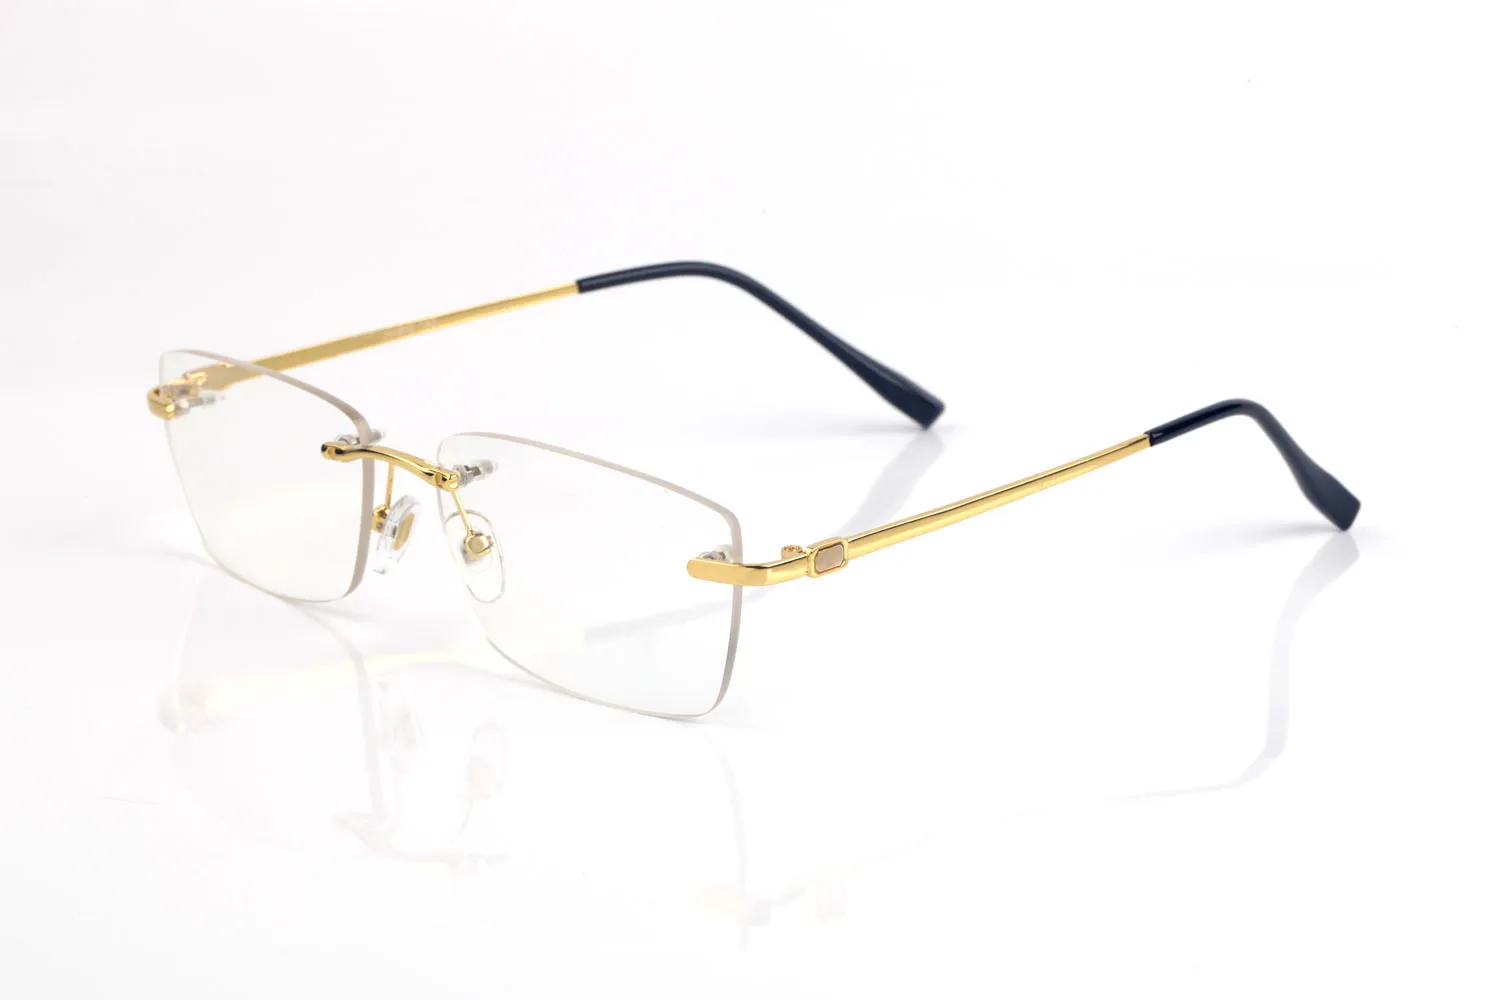 Yeni Moda Vintage Çıkarsız Güneş Gözlüğü Erkek Kadınlar Spor Tutumu Retro Güneş Gözlükleri Kaplama Gözlükler Lunetes Gözlük Oculo 239r